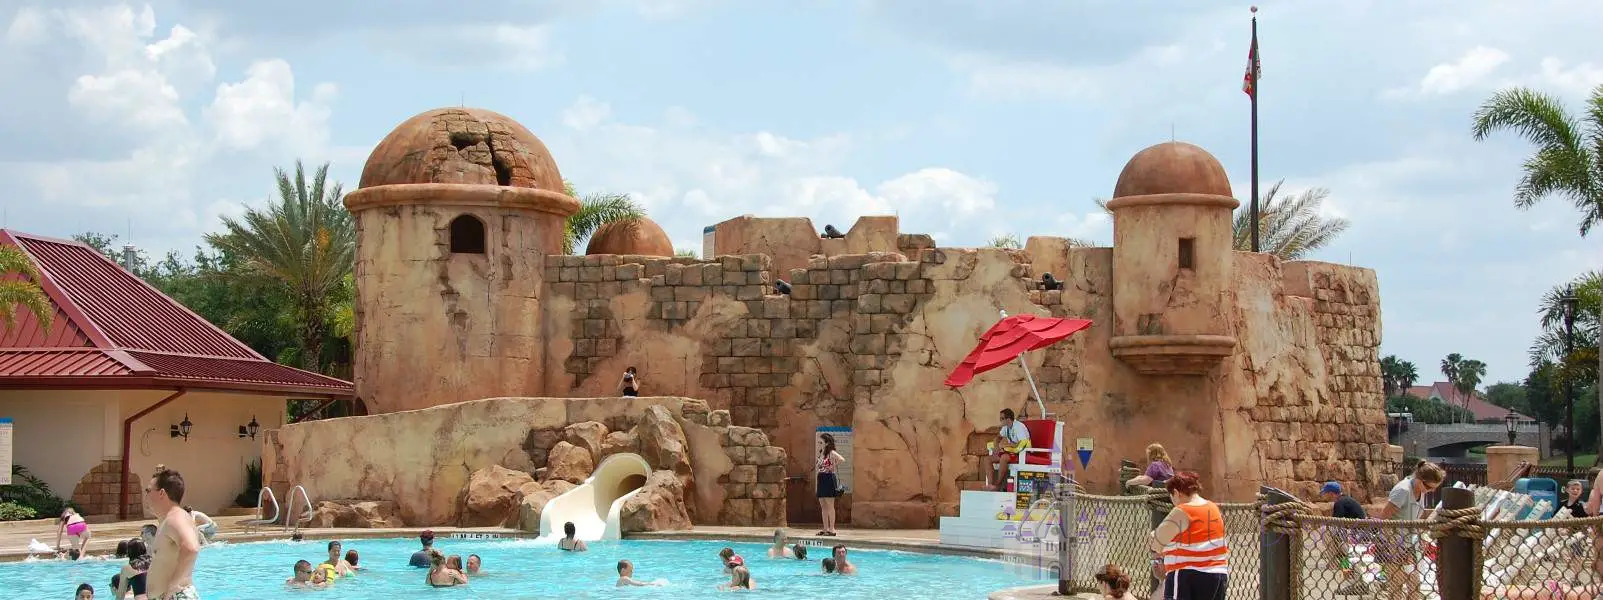 Le Caribbean Beach Resort apporte les Caraïbes à Disney !